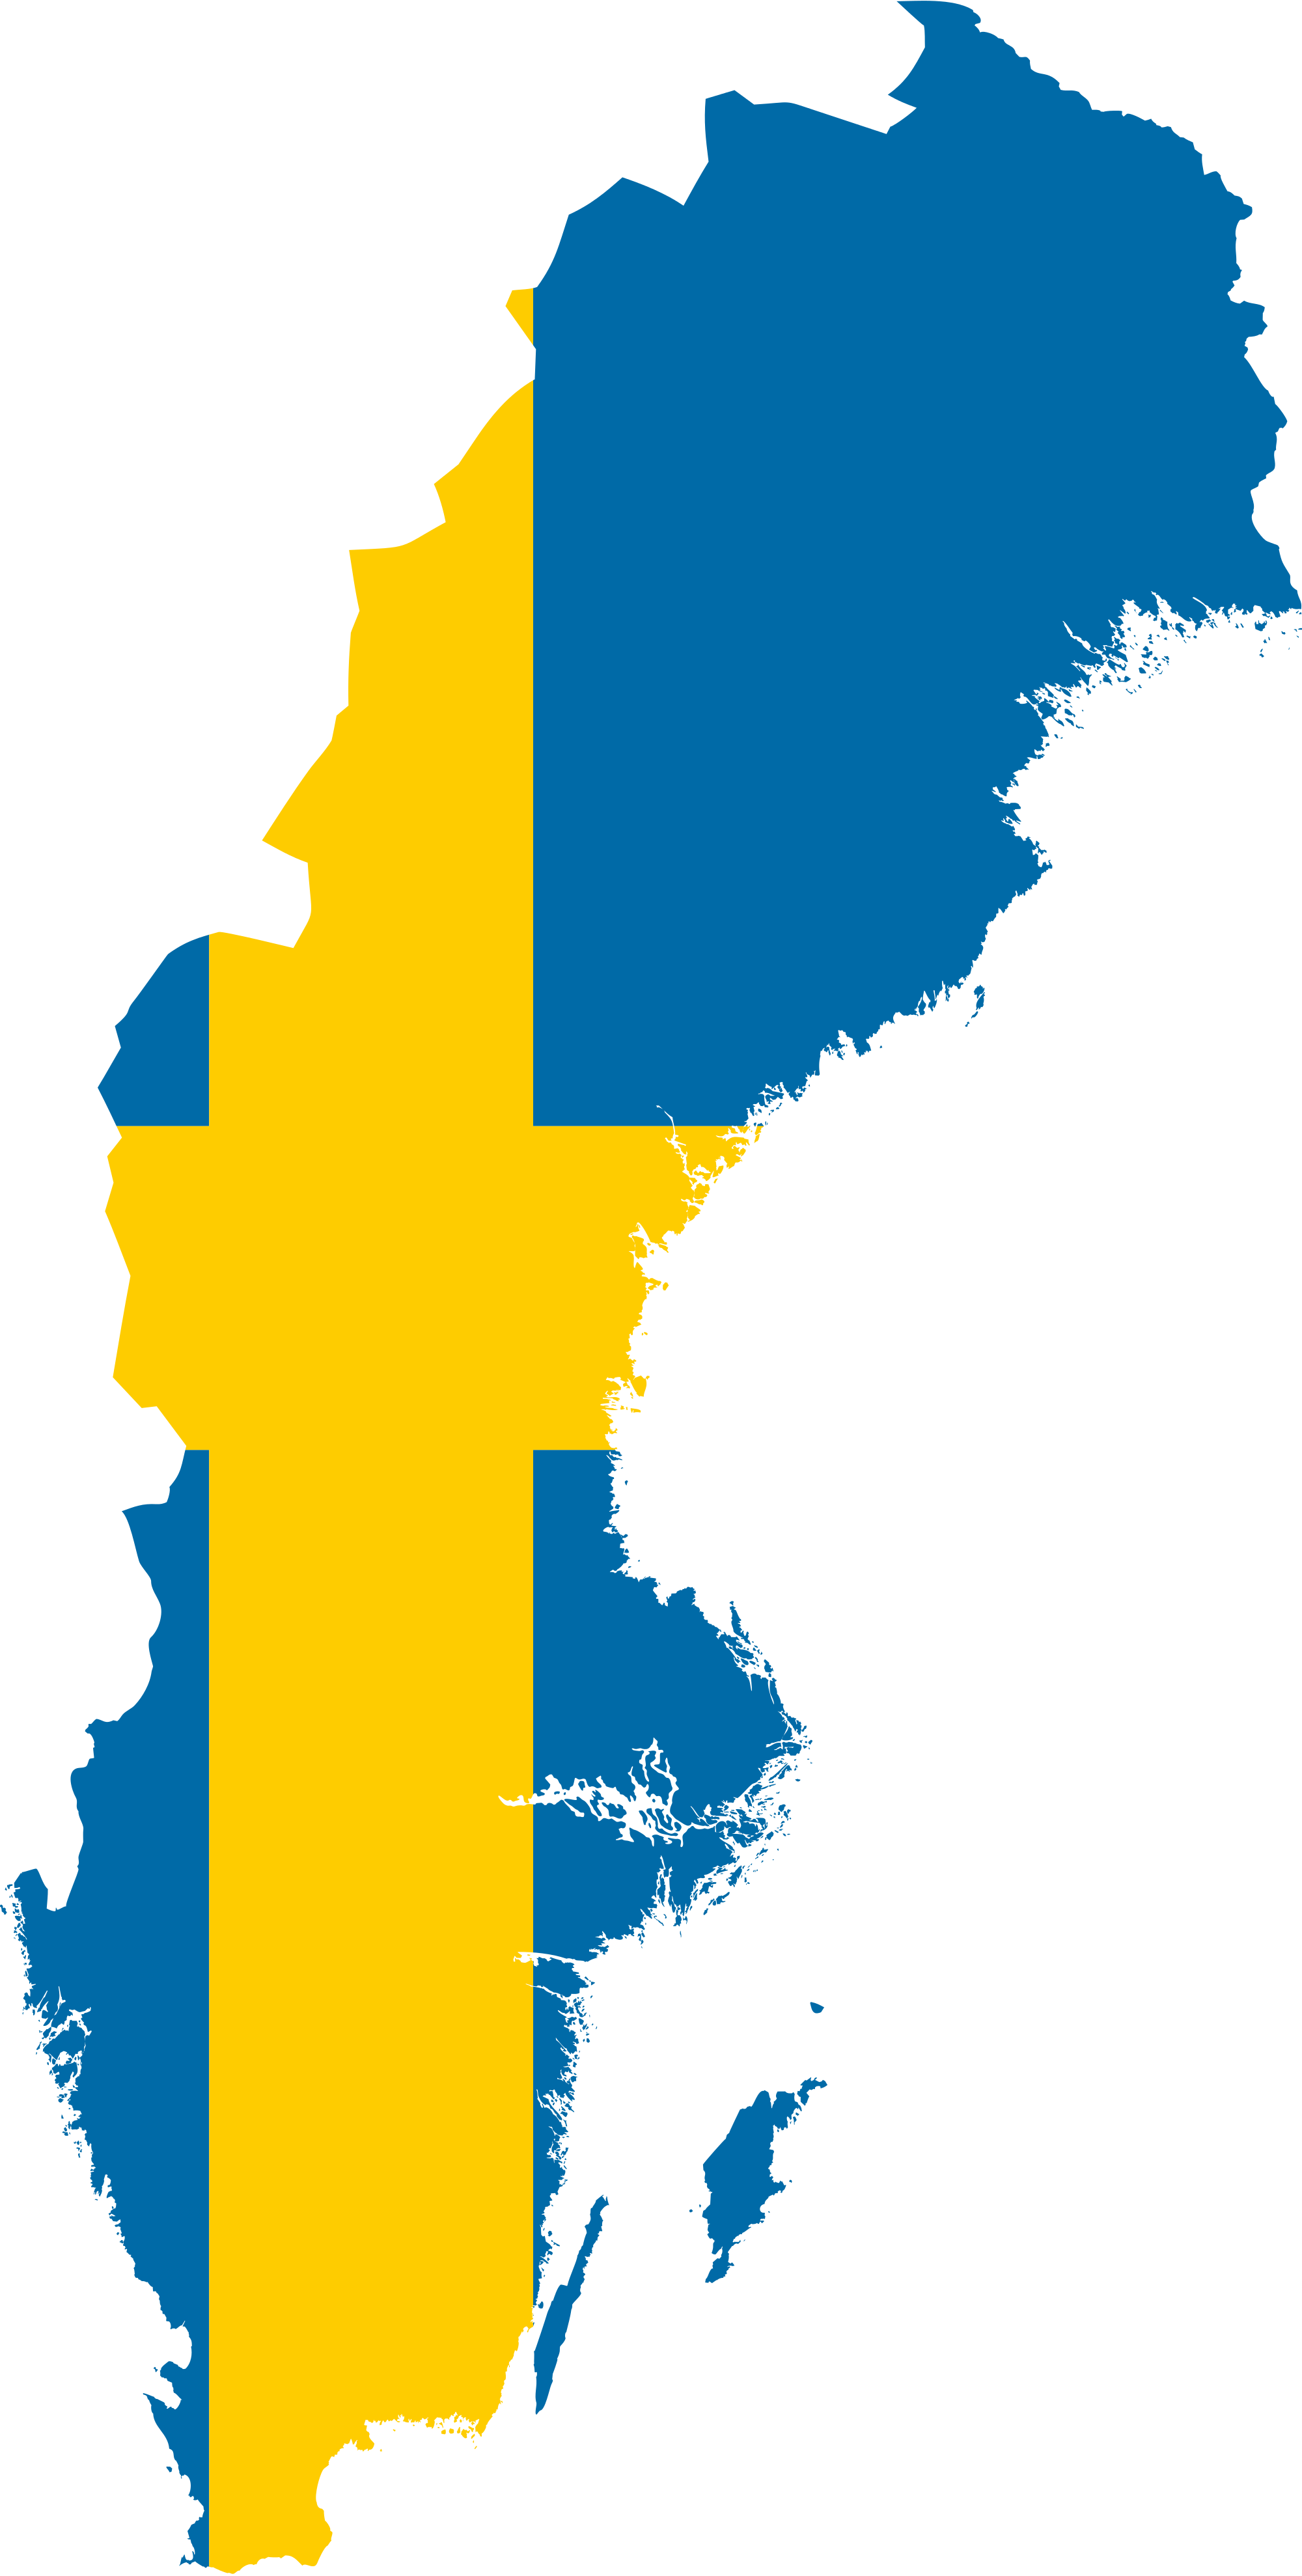 Sweden_flag.png